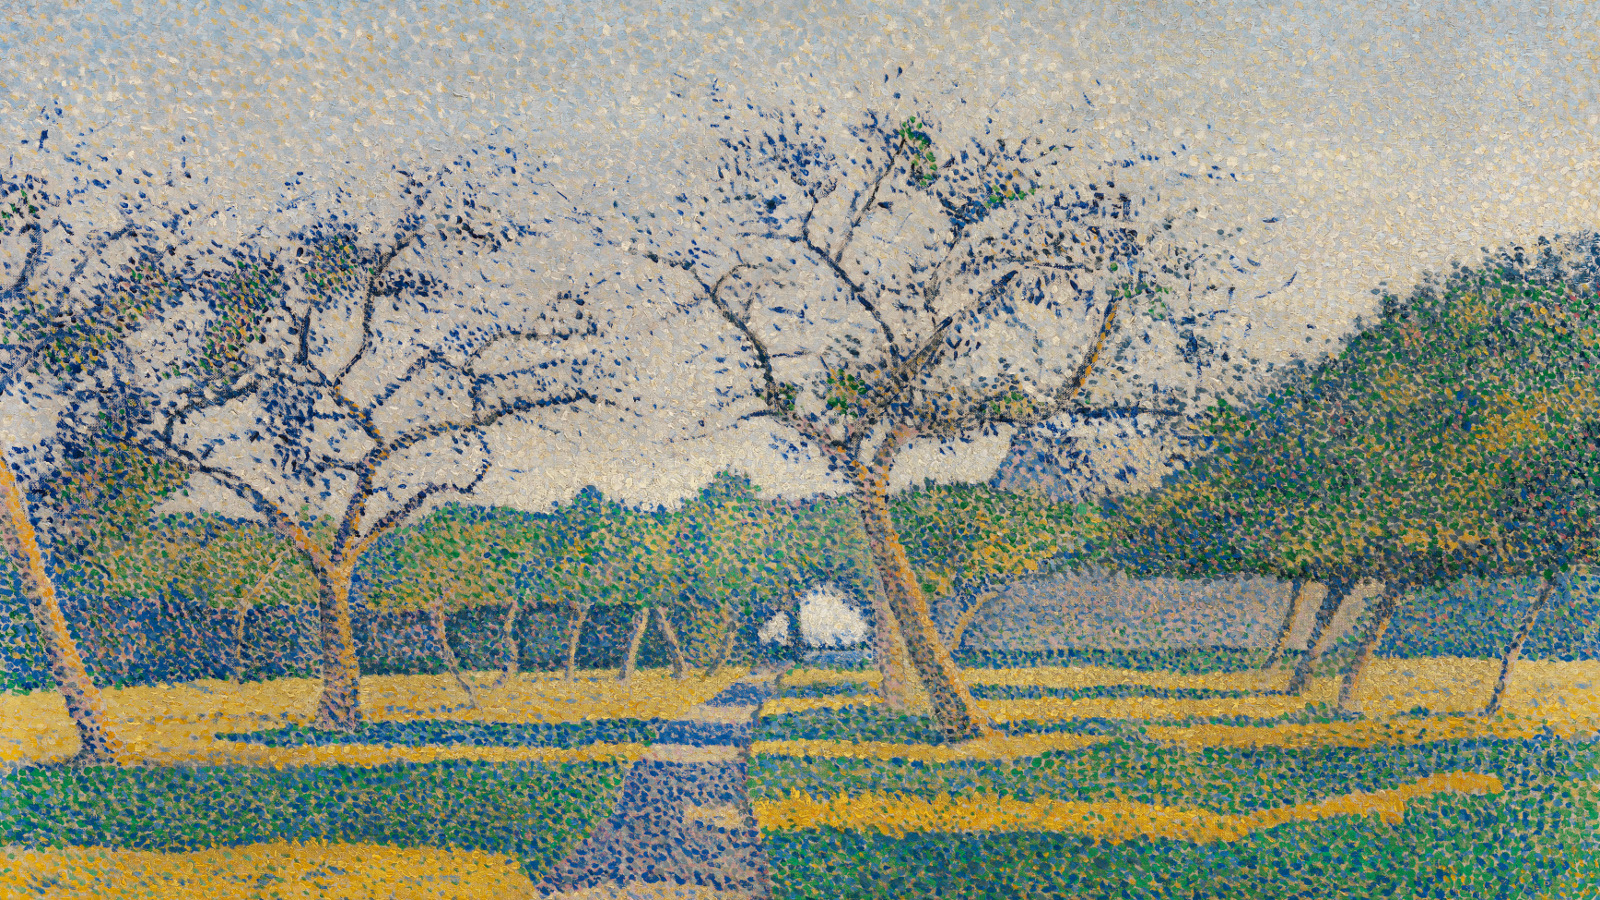 Kuvassa on puiston puita, joissa on sinisiä kukkia ja maassa keltaisia  ja vihreän sinisiä alueita.  Koko teos on pilkutettua väreillä.